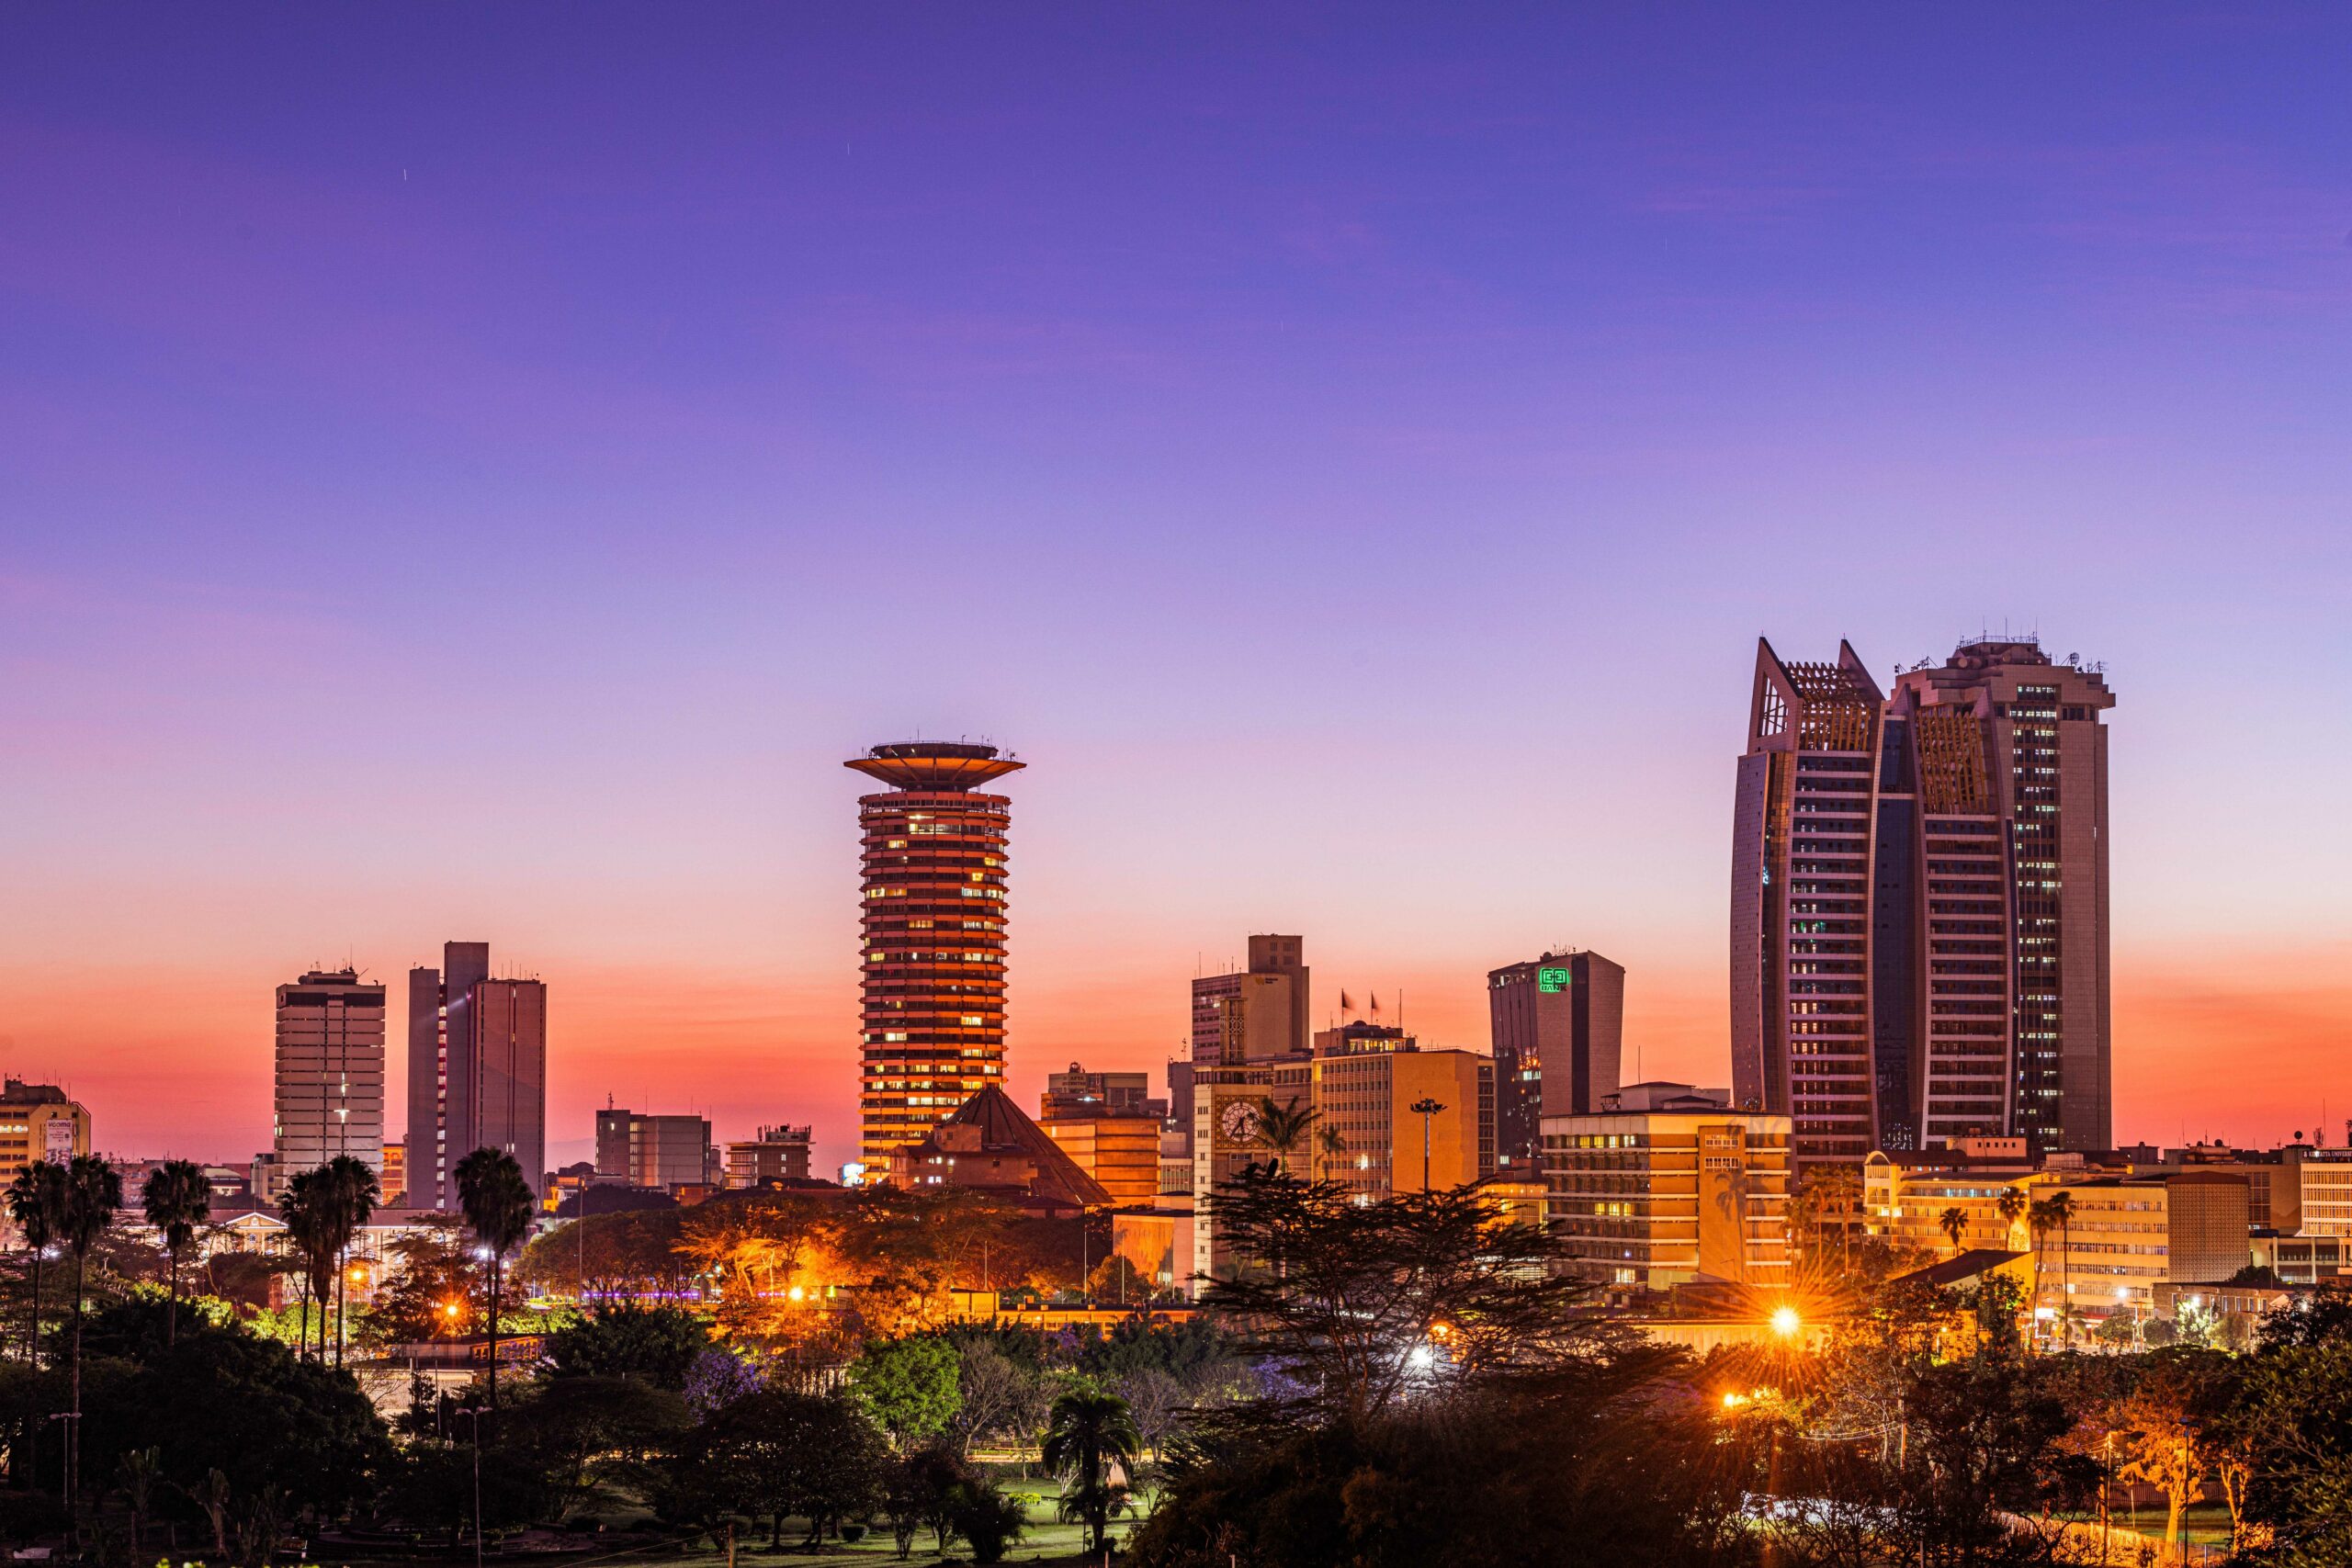 Nairobi,Kenya